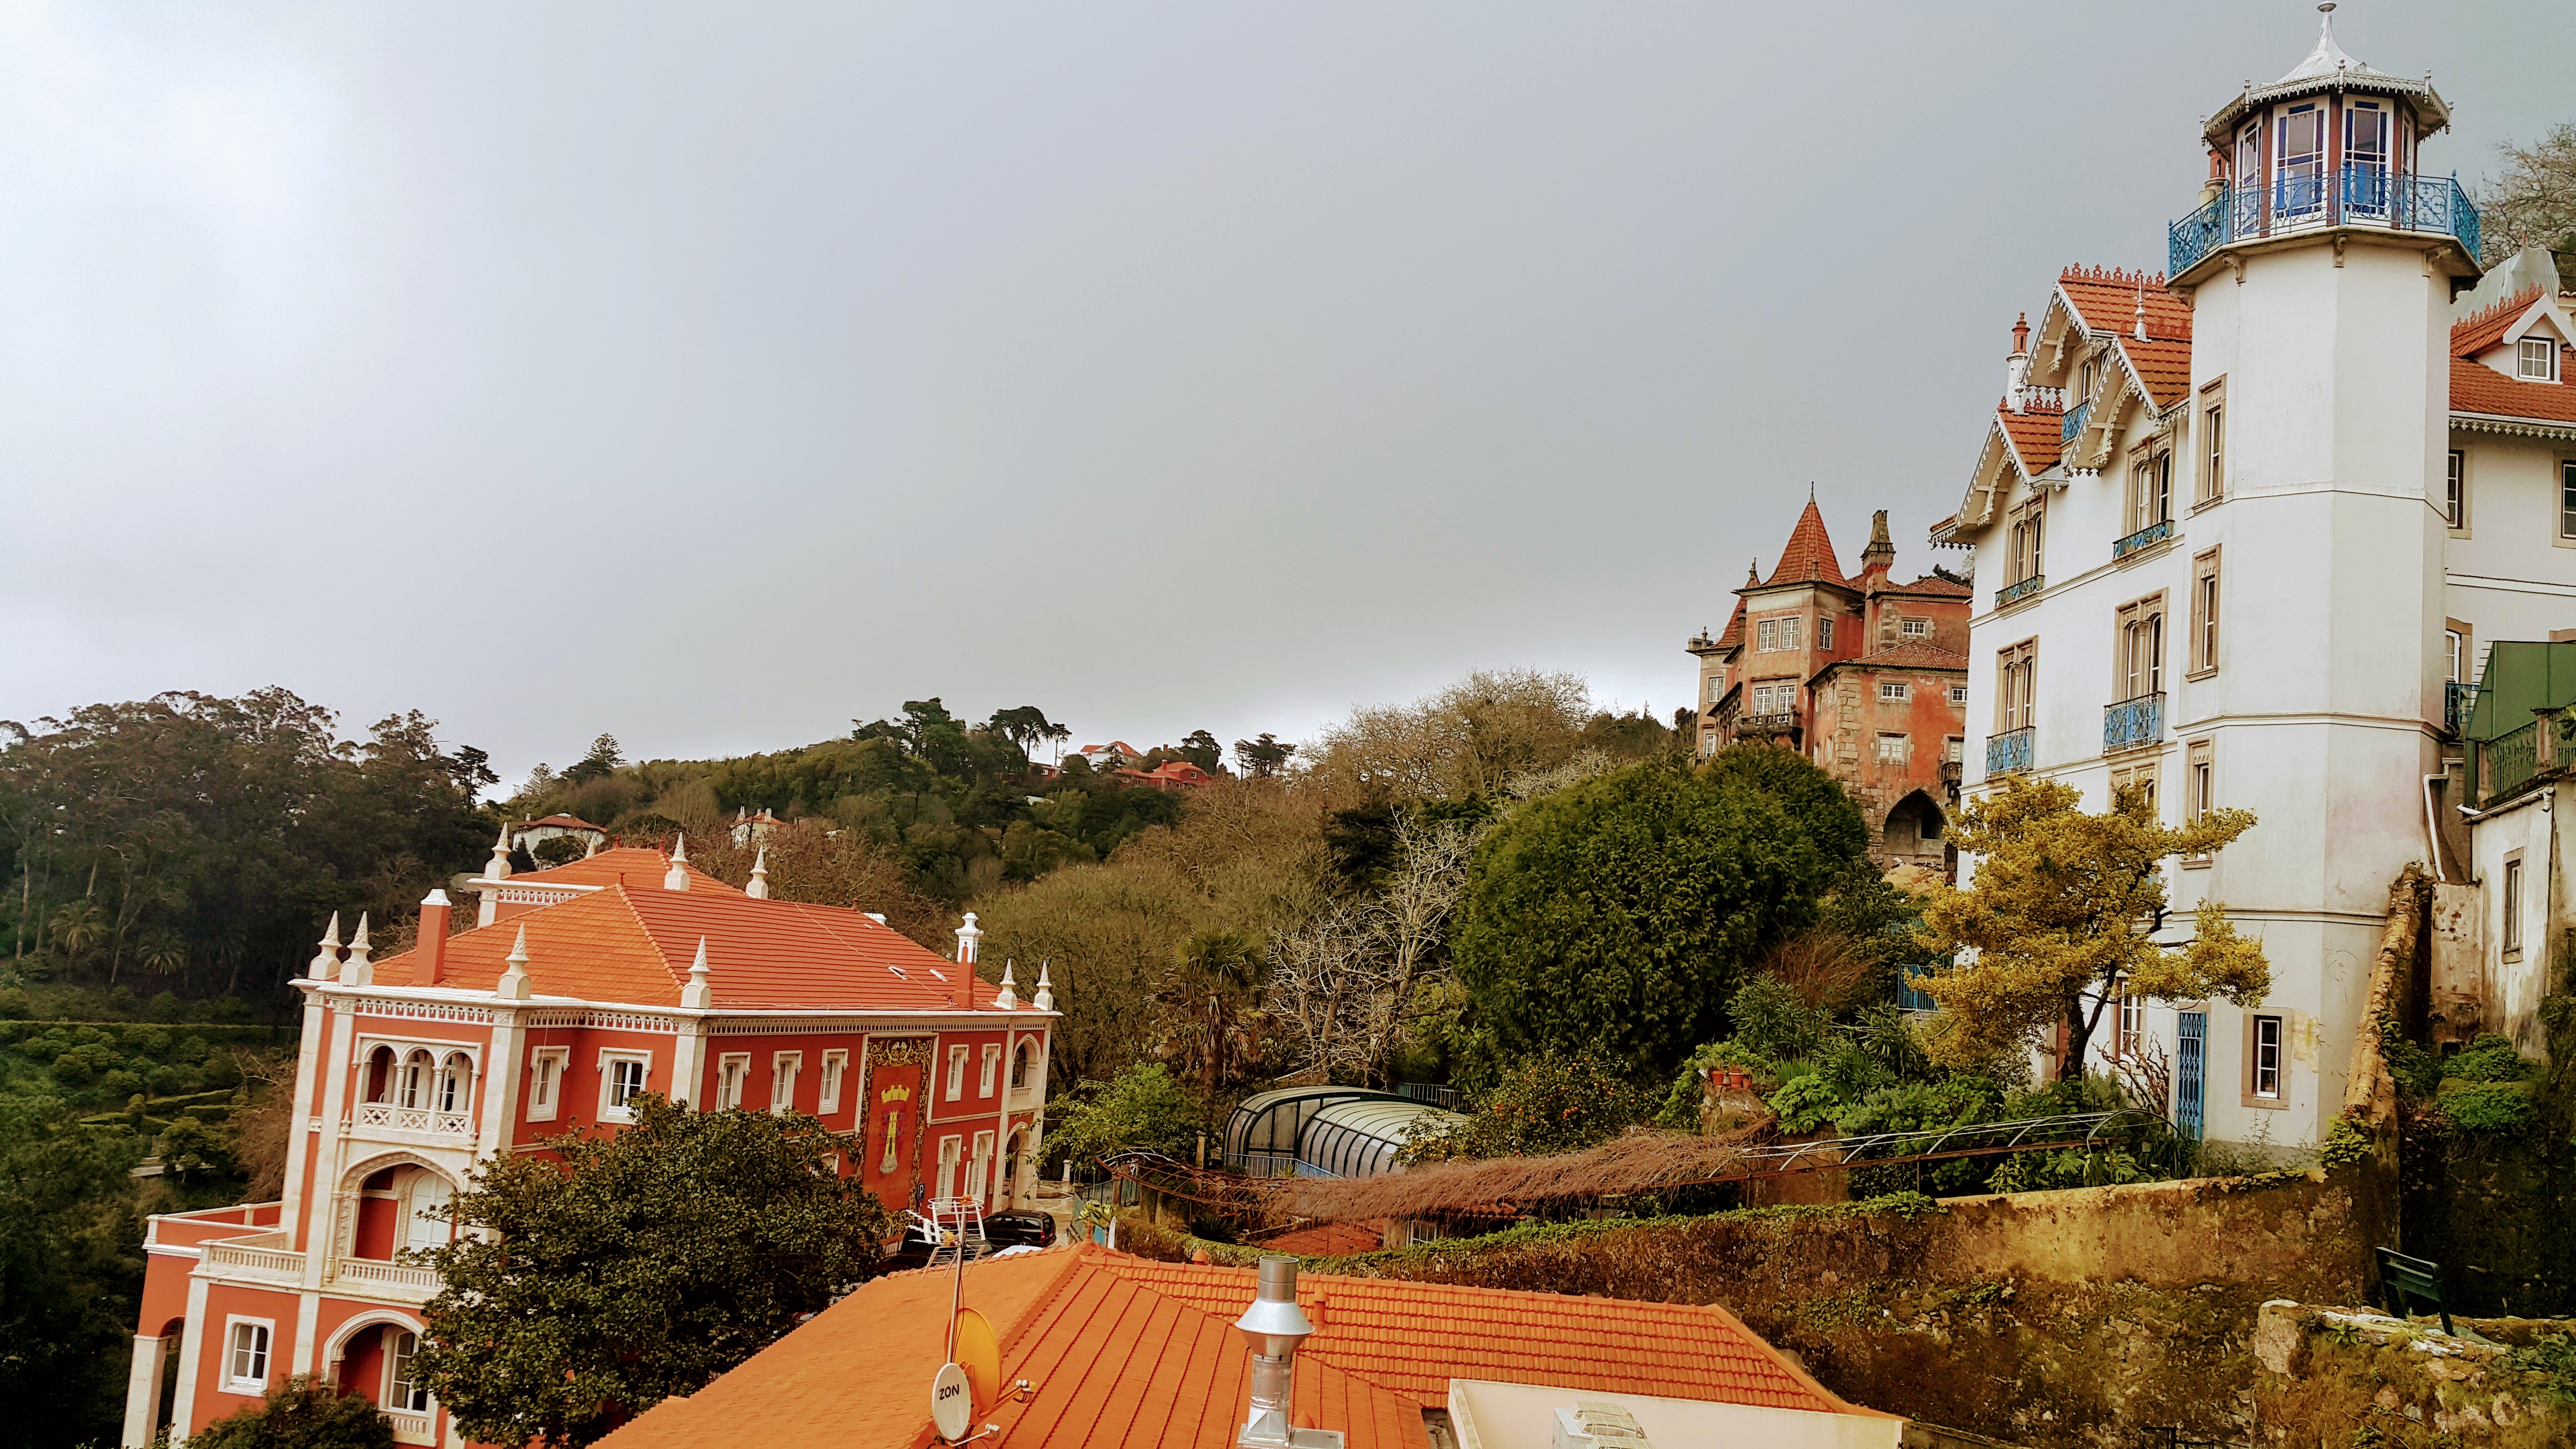 Şato Gibi Evleriyle Ünlü Sintra'dan Bir Görünüm